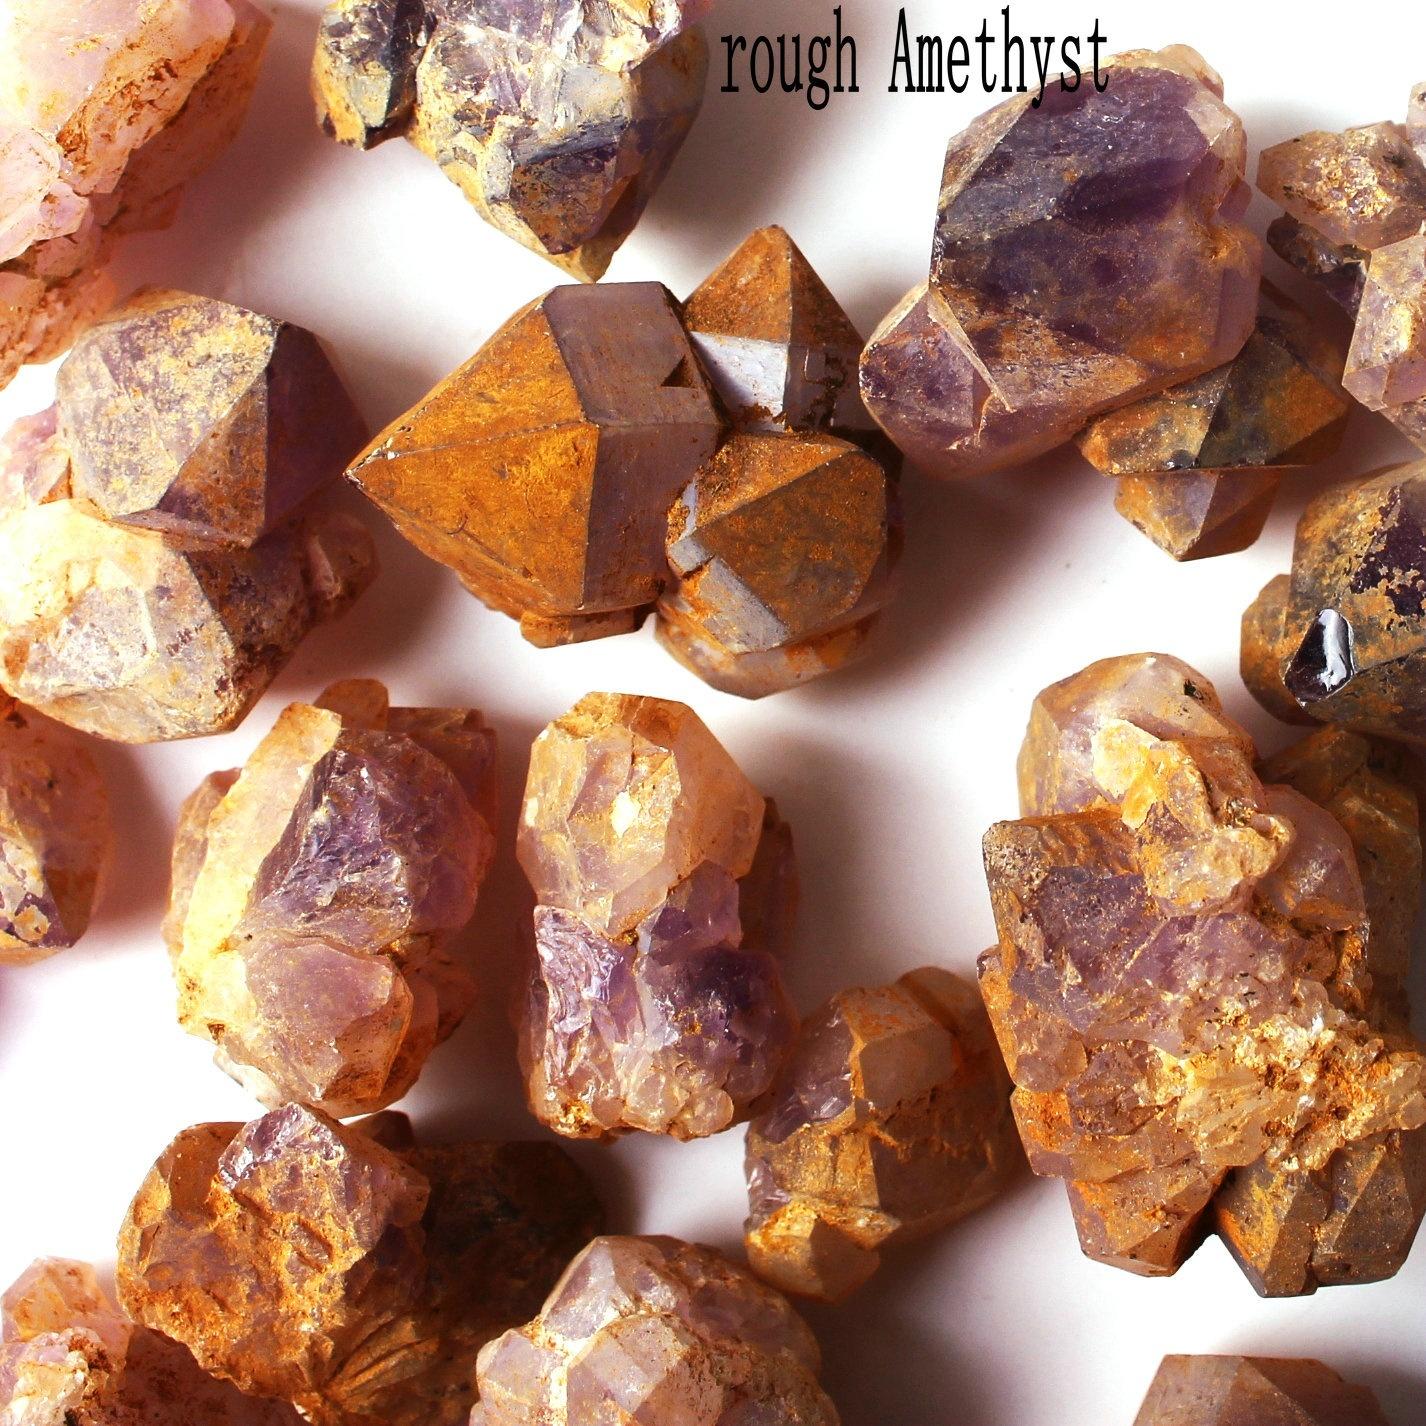 Изображение товара: Натуральный Аметист, кварцевый кристалл Vug, сырье, необработанный кварц, образец неправильной формы, гравий, кристаллический камень, фиолетовый минерал, 30 г/50 г